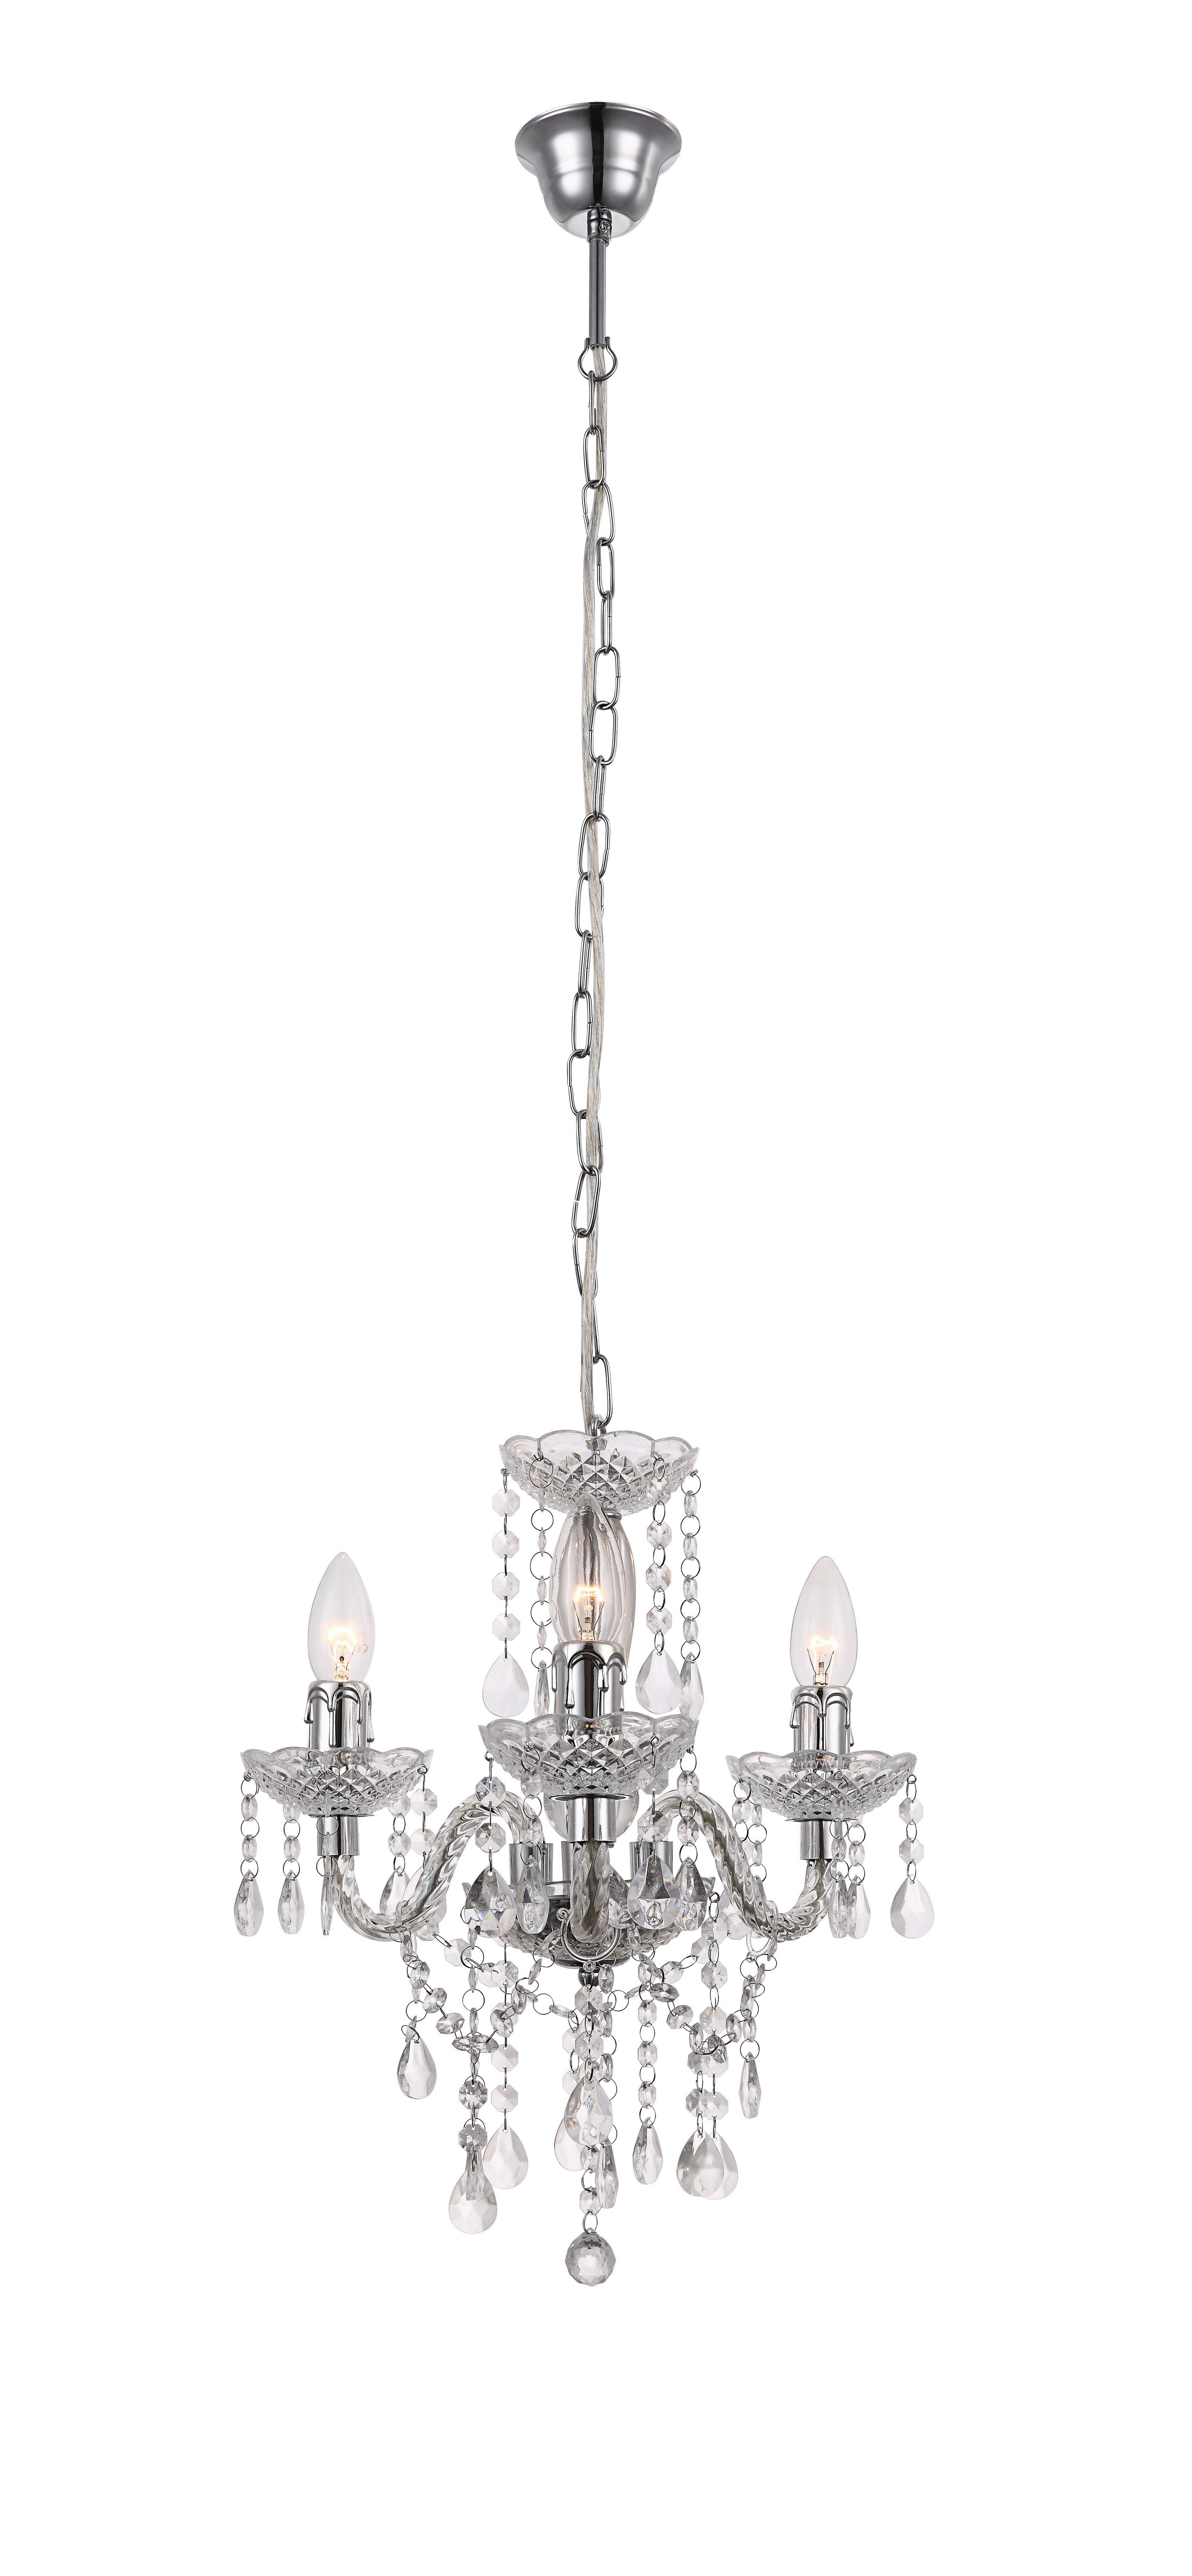 Závesná Lampa Isabella 35/125cm, 40 Watt - číra/chrómová, Romantický / Vidiecky, kov/plast (35/125cm) - Modern Living